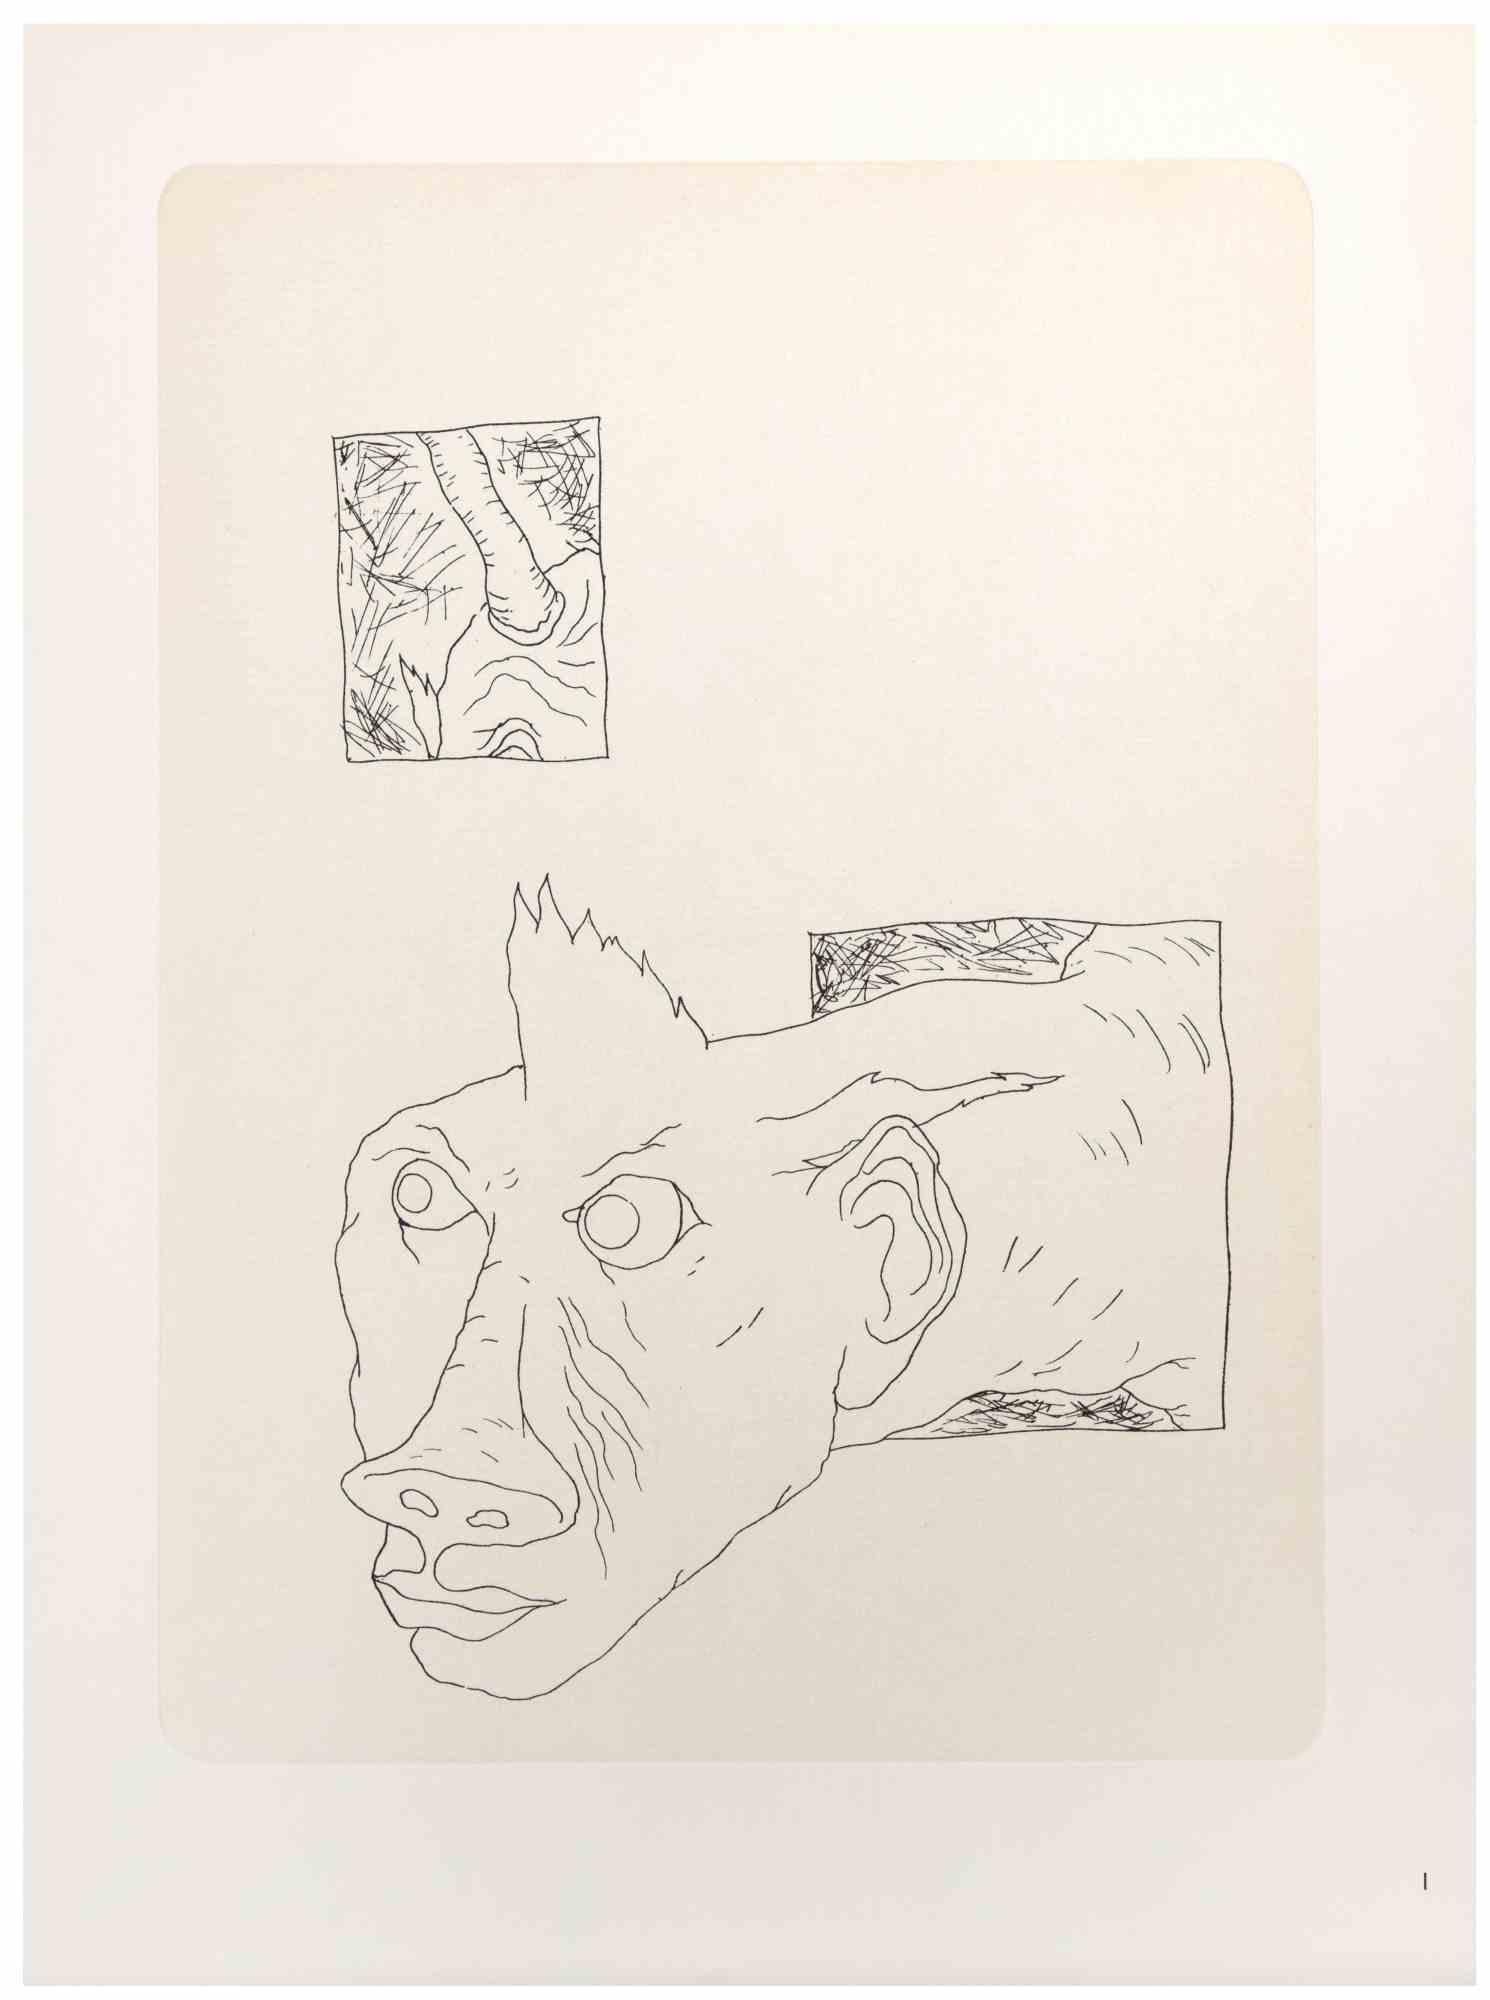 Phantasmes ist ein modernes Kunstwerk von Chaval Graveur aus dem Jahr 1972.

Fototypie auf Papier.

Gute Bedingungen.